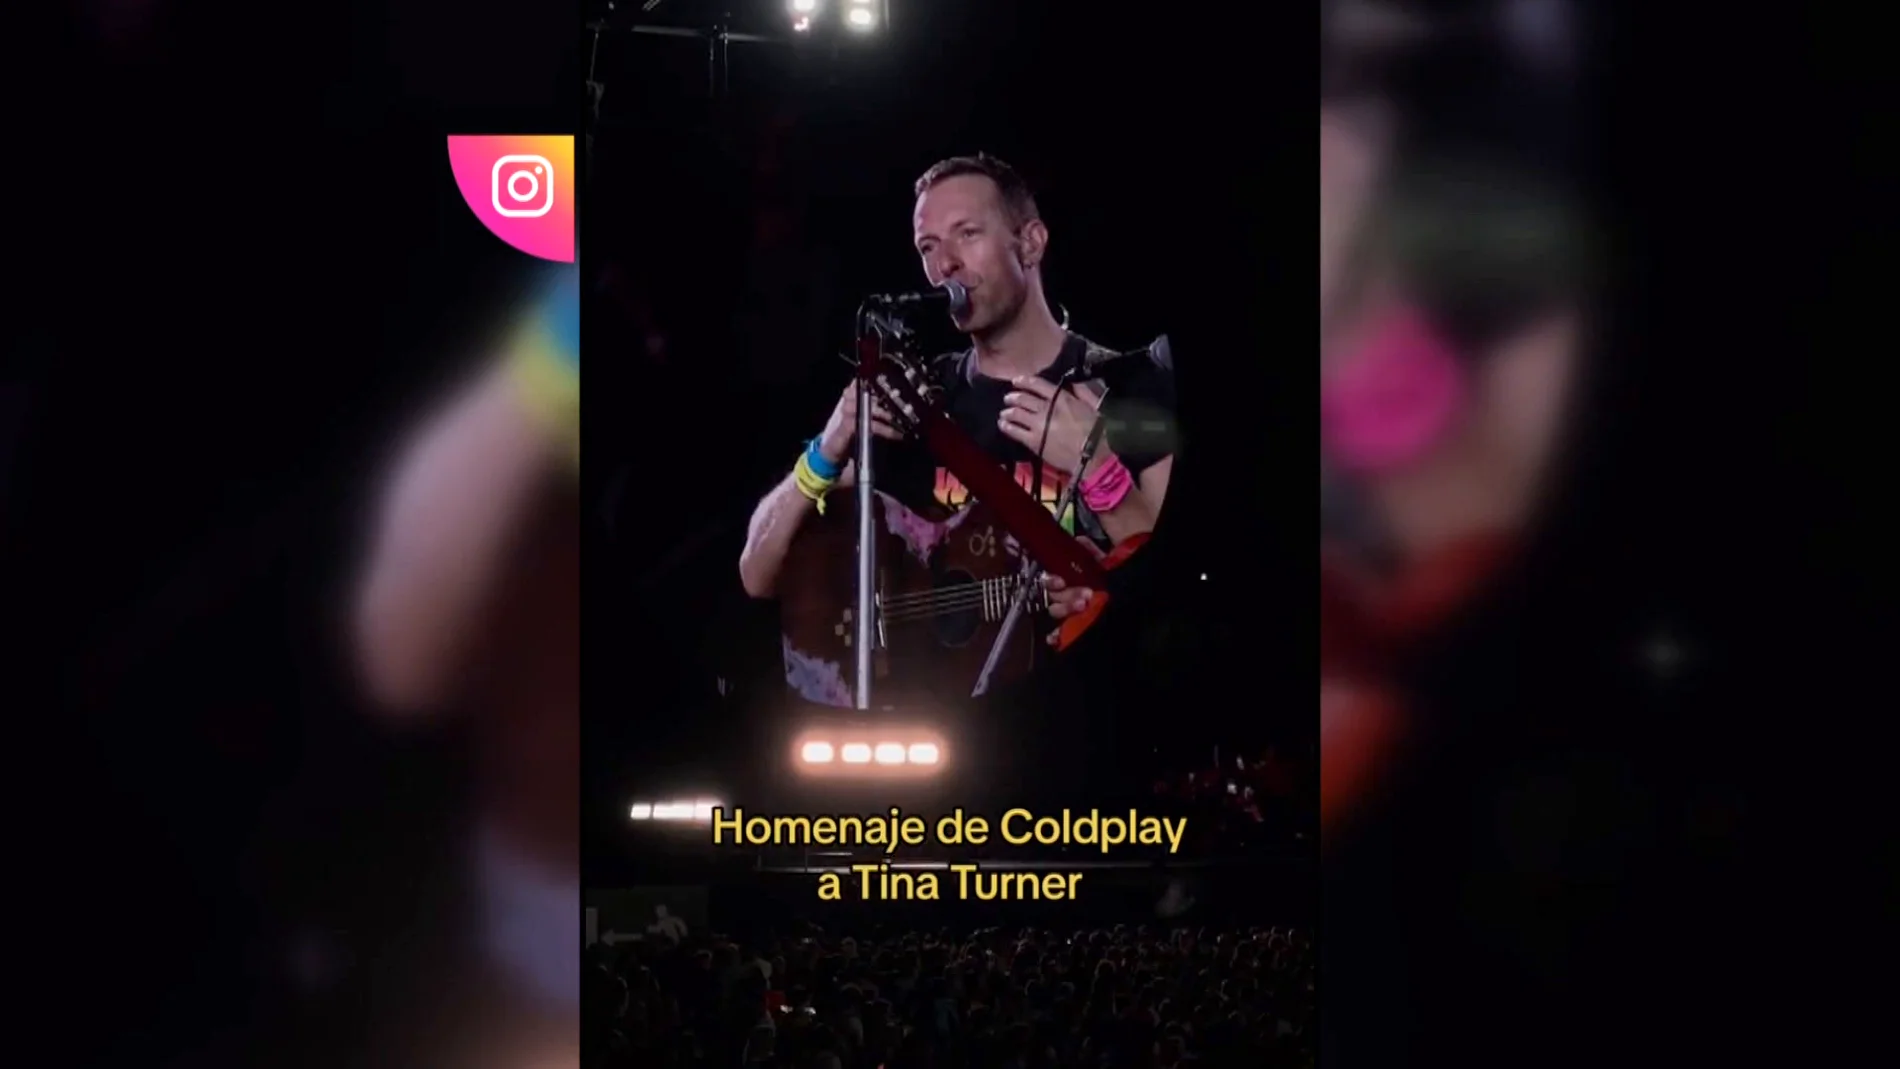 Estrellas nacionales e internacionales han visto brillar a Coldplay en su primera noche en Barcelona